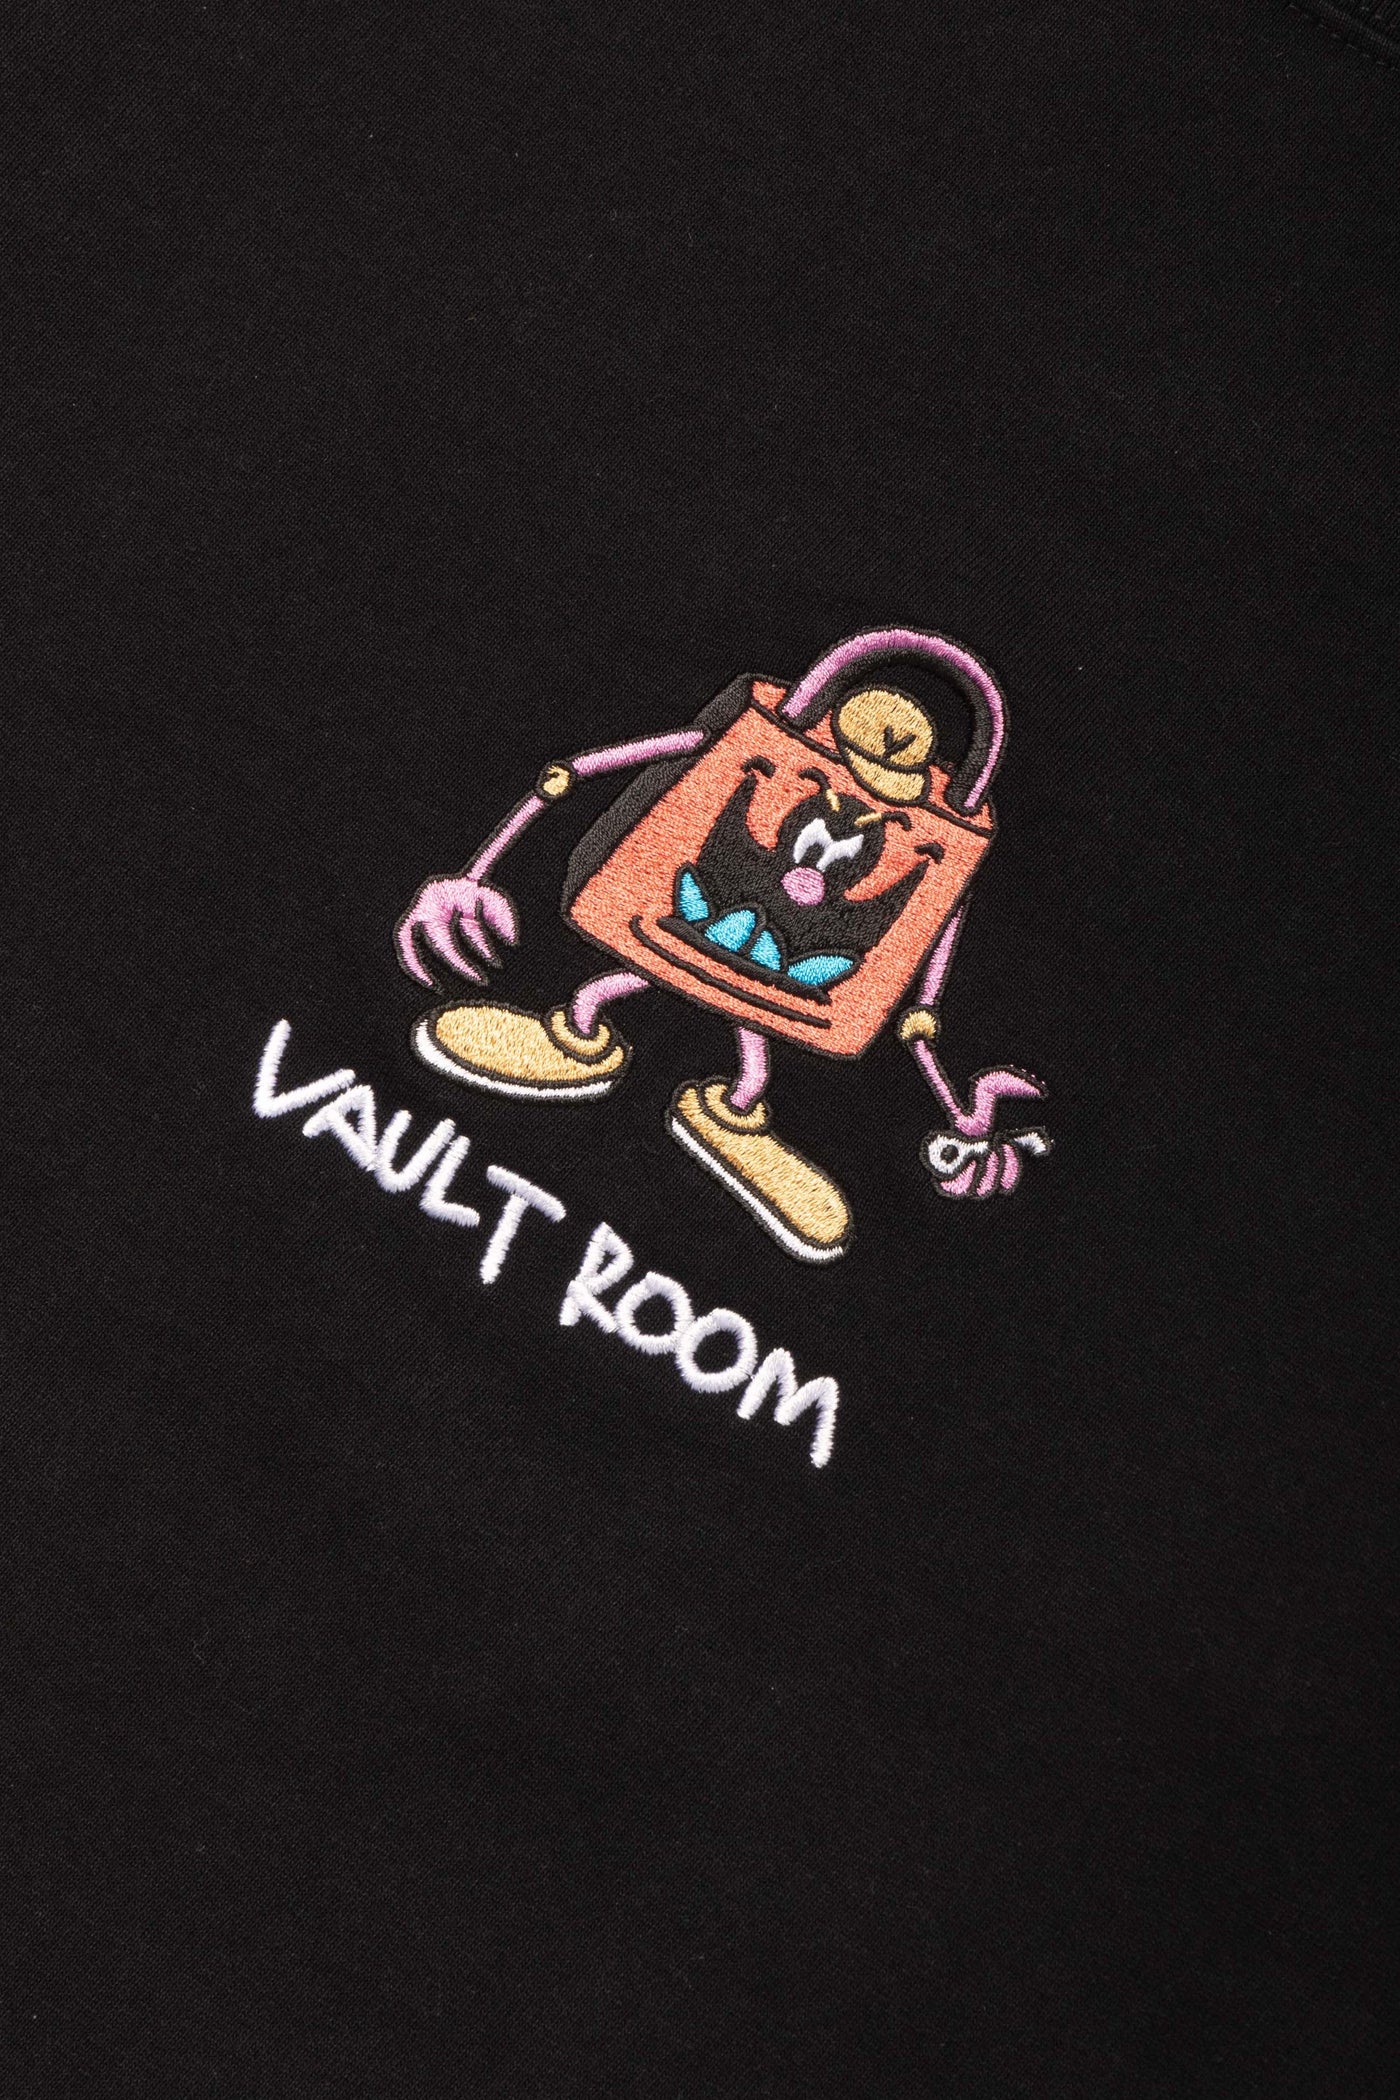 vaultroom "DEVIL" TEE / BLK